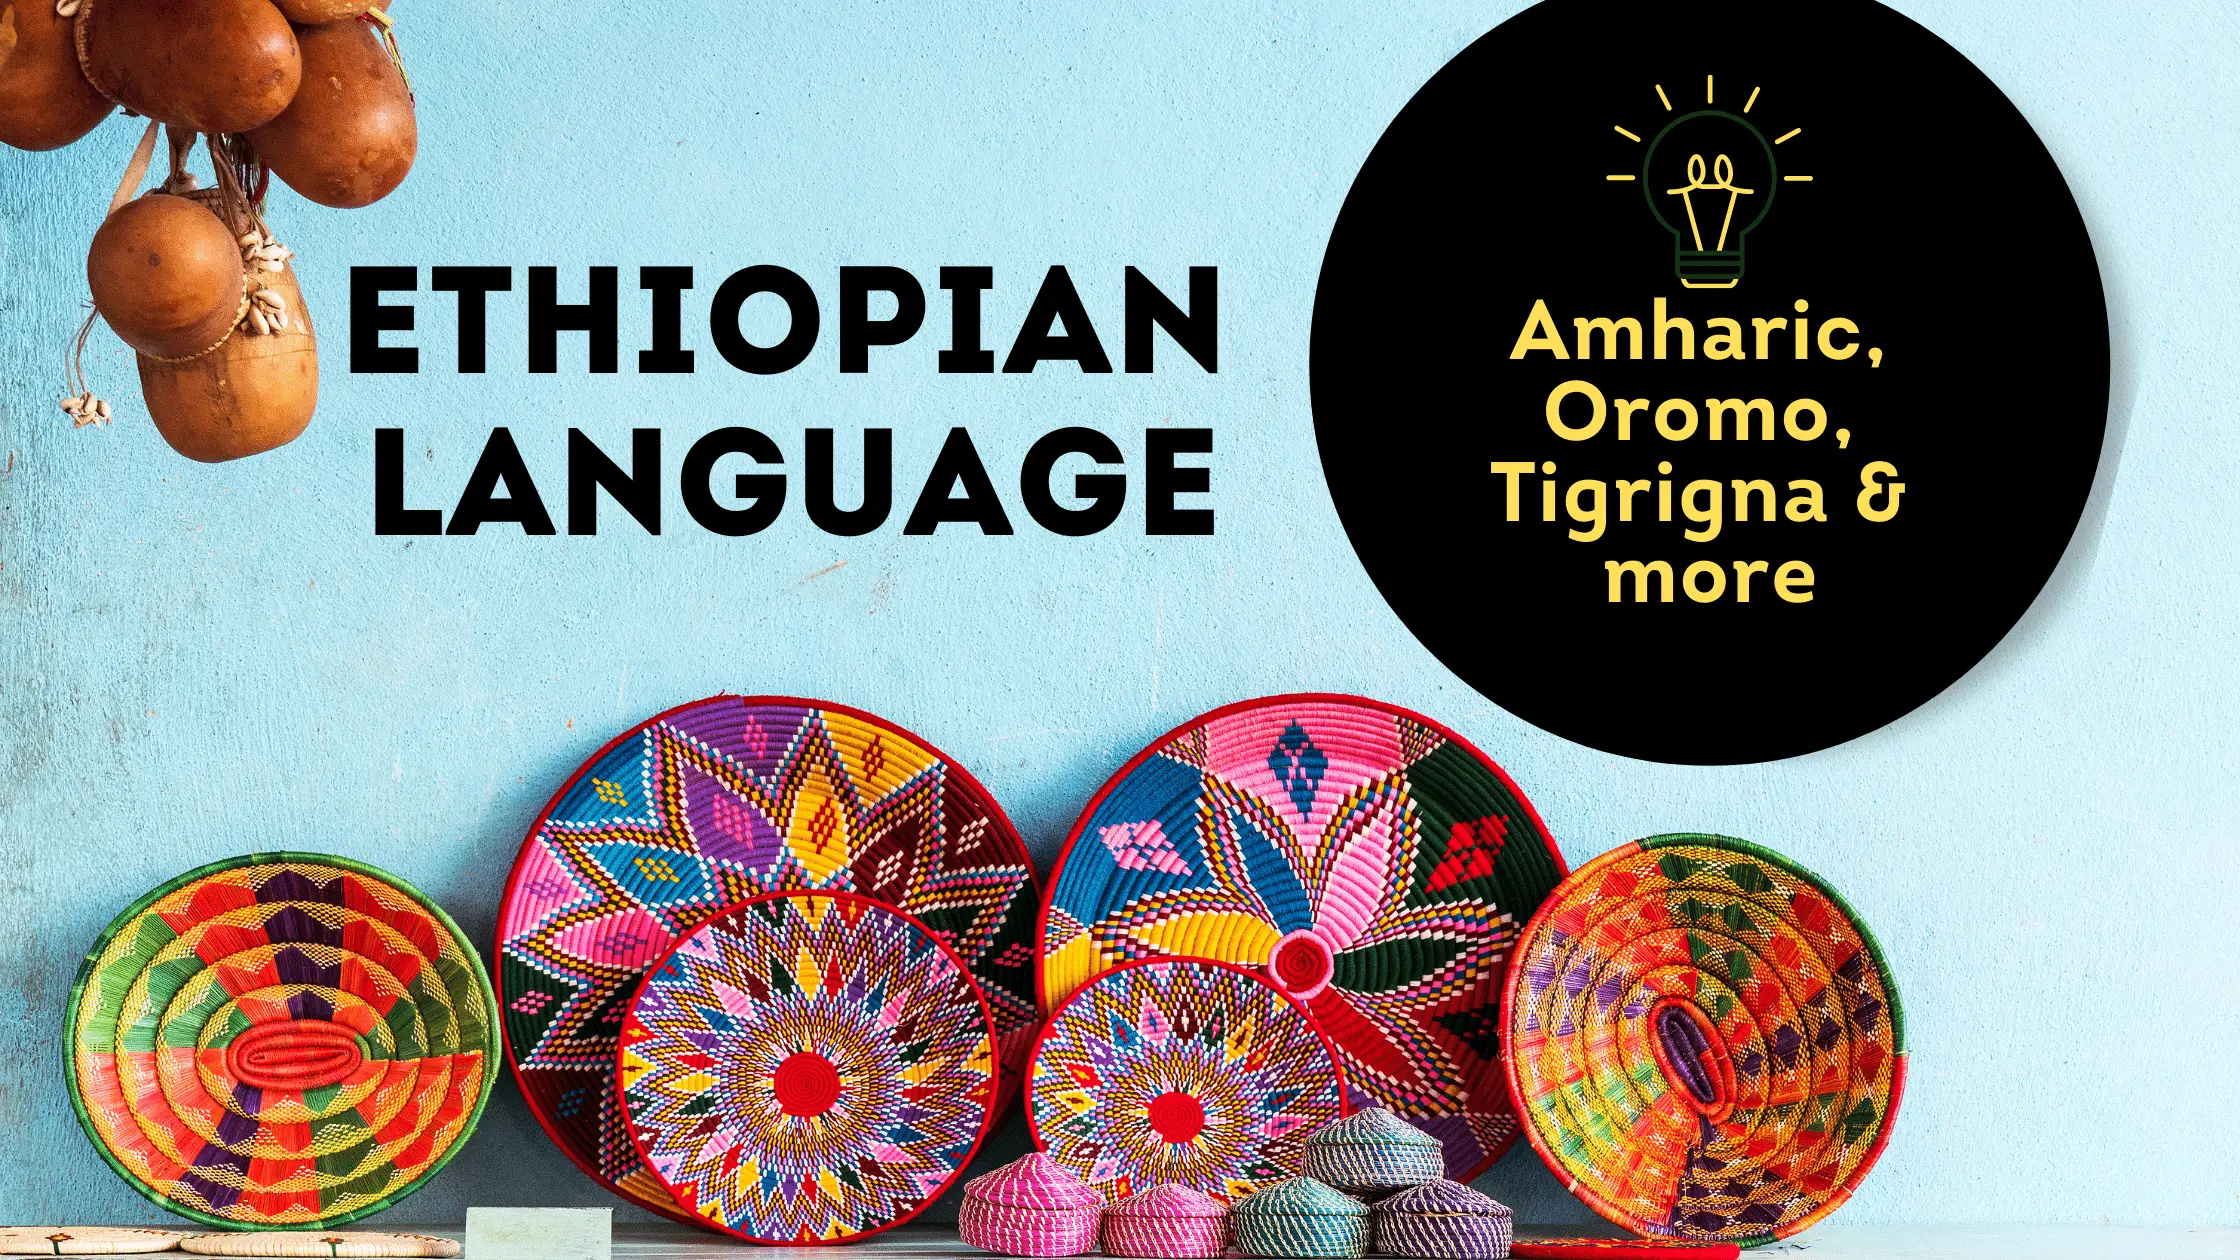 Ethiopian language